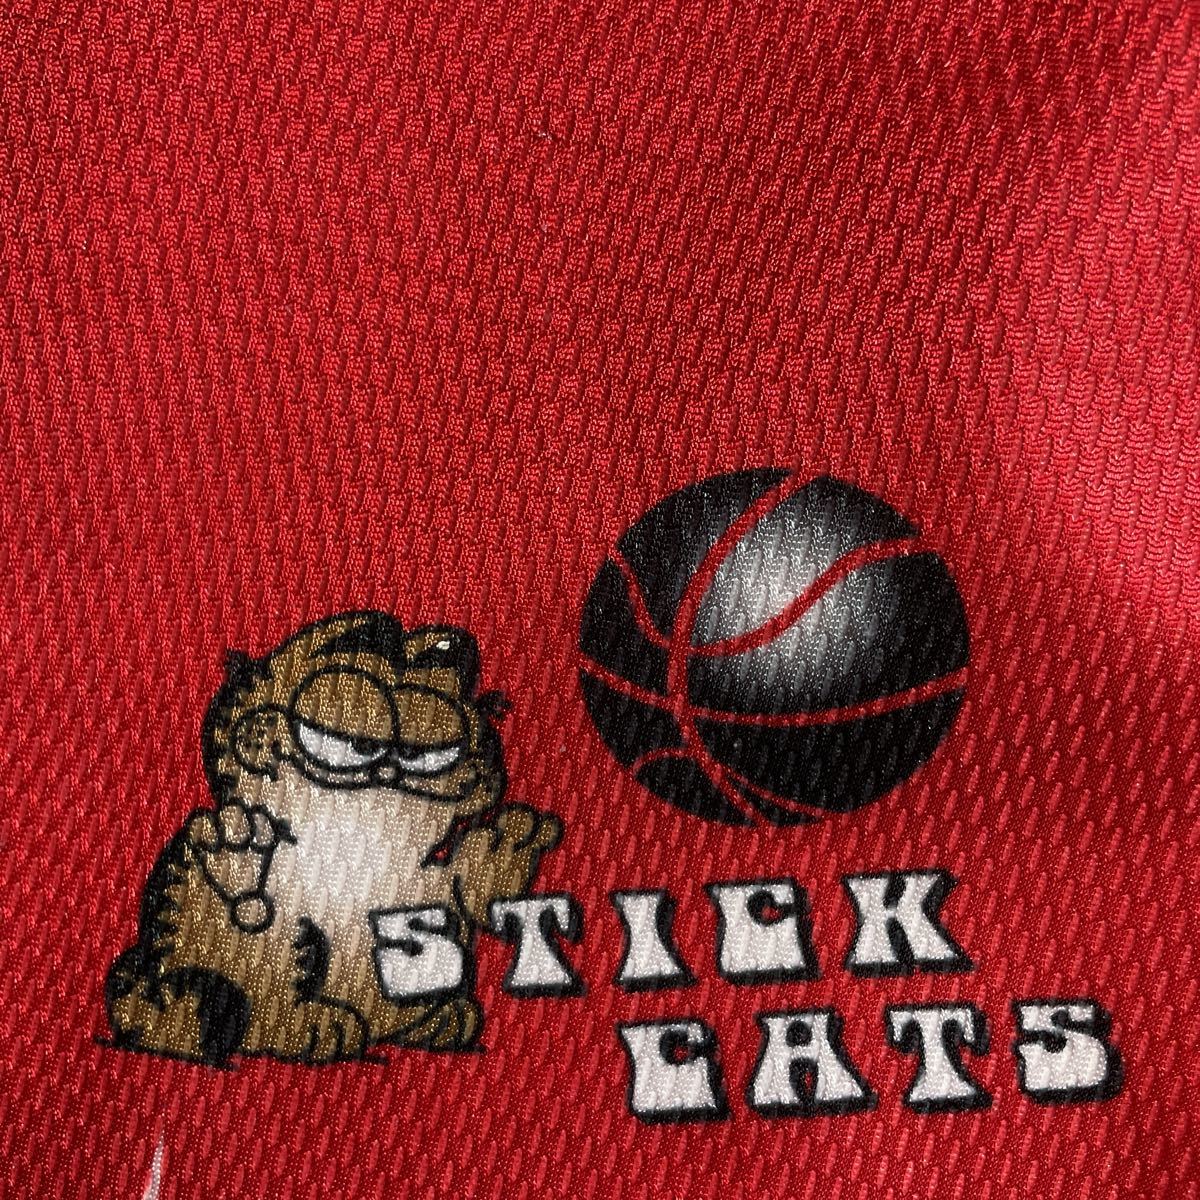 駒沢大学 駒澤 バスケットボール部 STICK CATS アシックス asics 赤 レッド バスパン バスケットボールパンツ_画像5